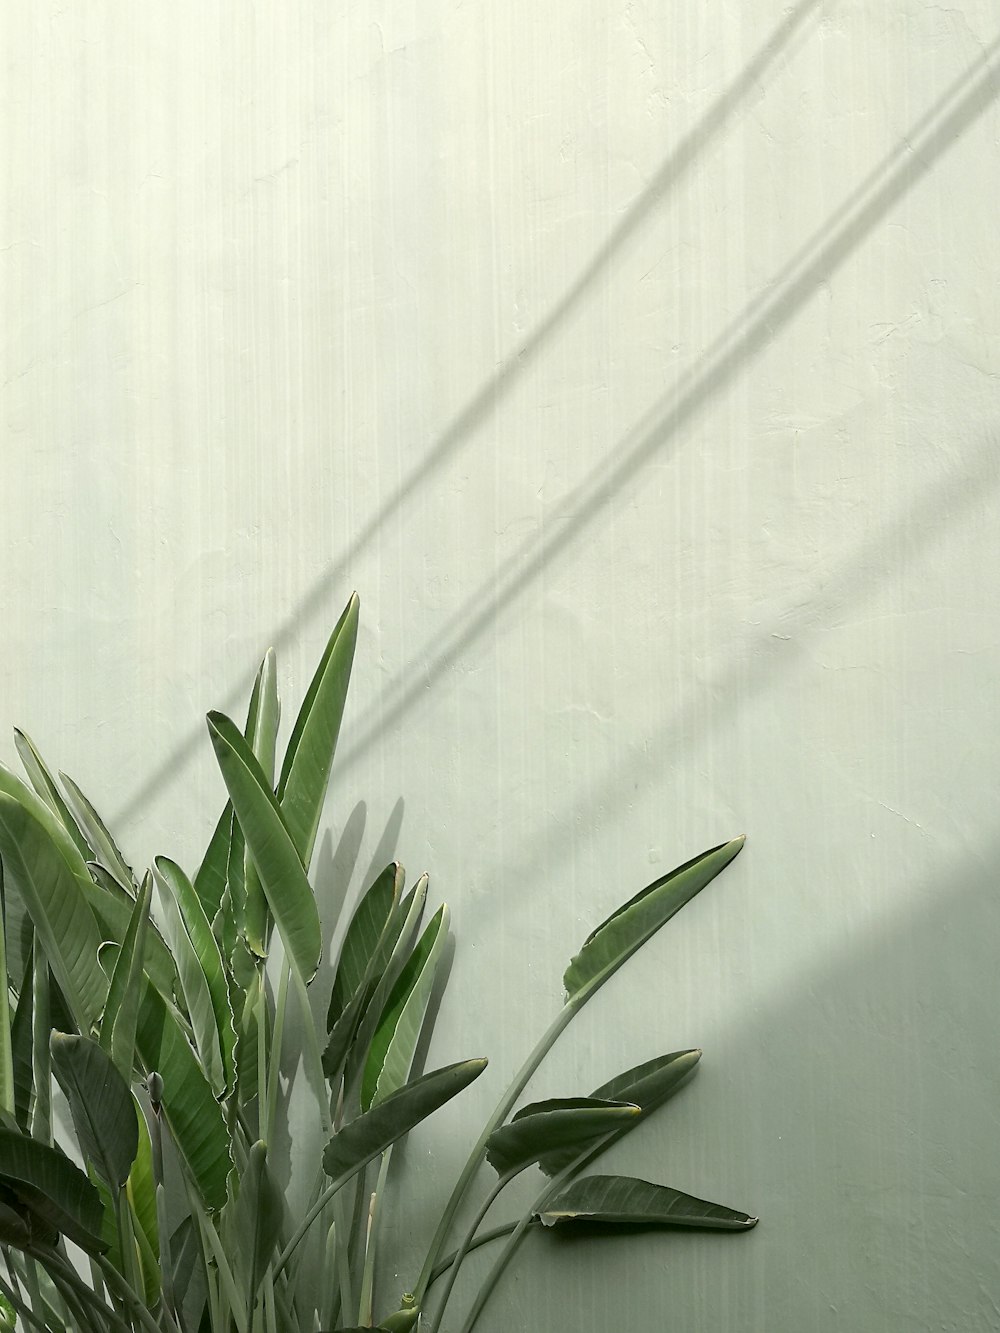 grüne Pflanze neben weißer Wand